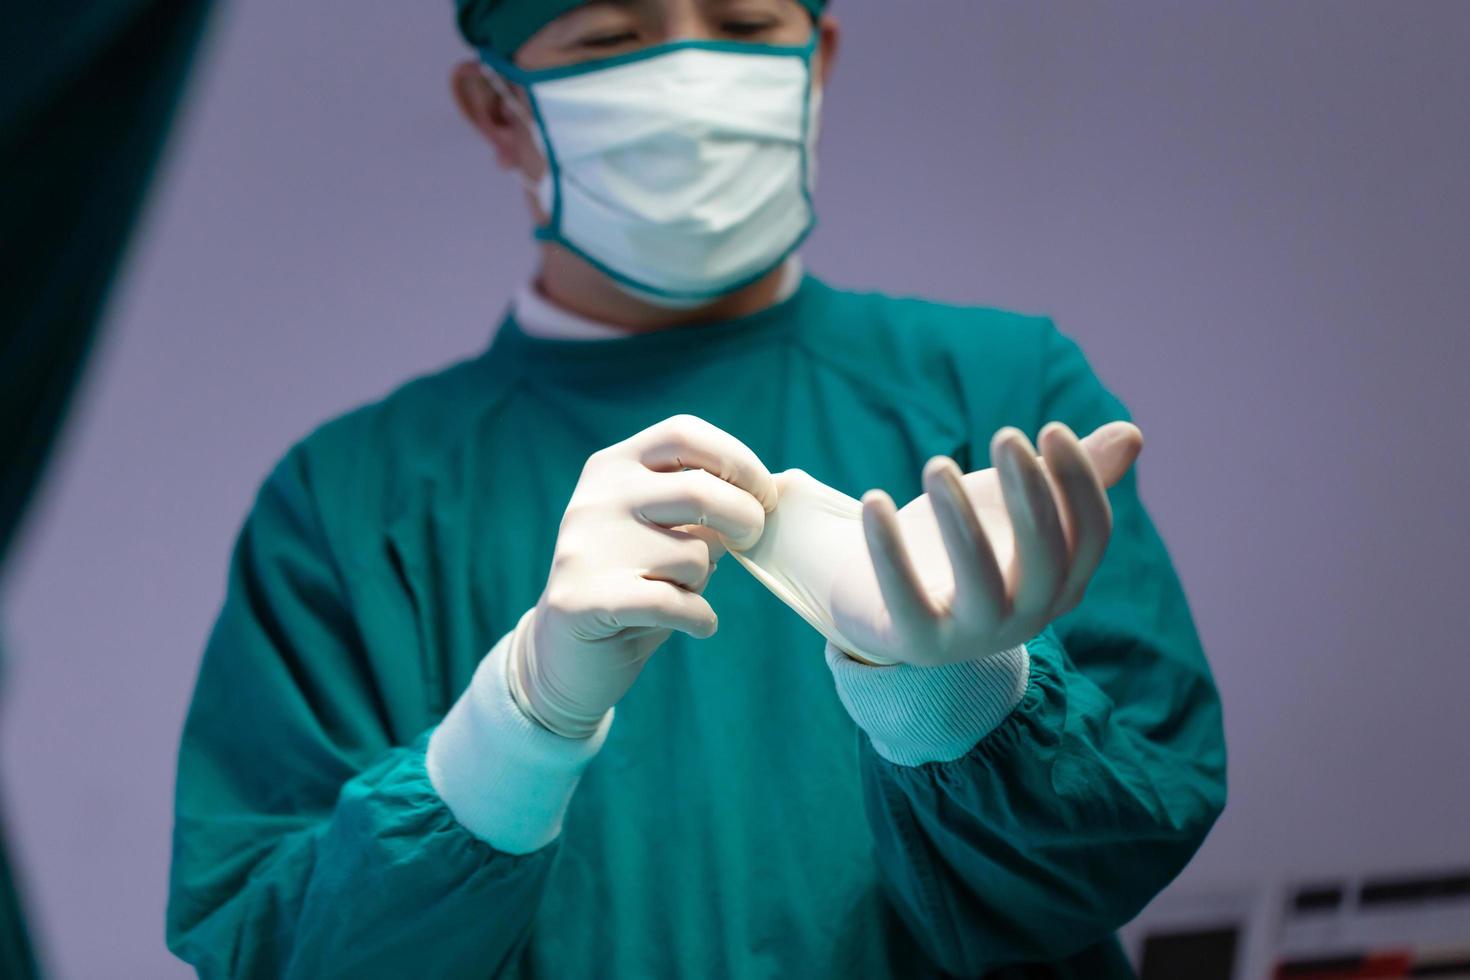 chirurgo maschio che indossa guanti protettivi medici e maschera chirurgica in sala operatoria in ospedale, team medico che esegue operazioni chirurgiche in sala operatoria foto